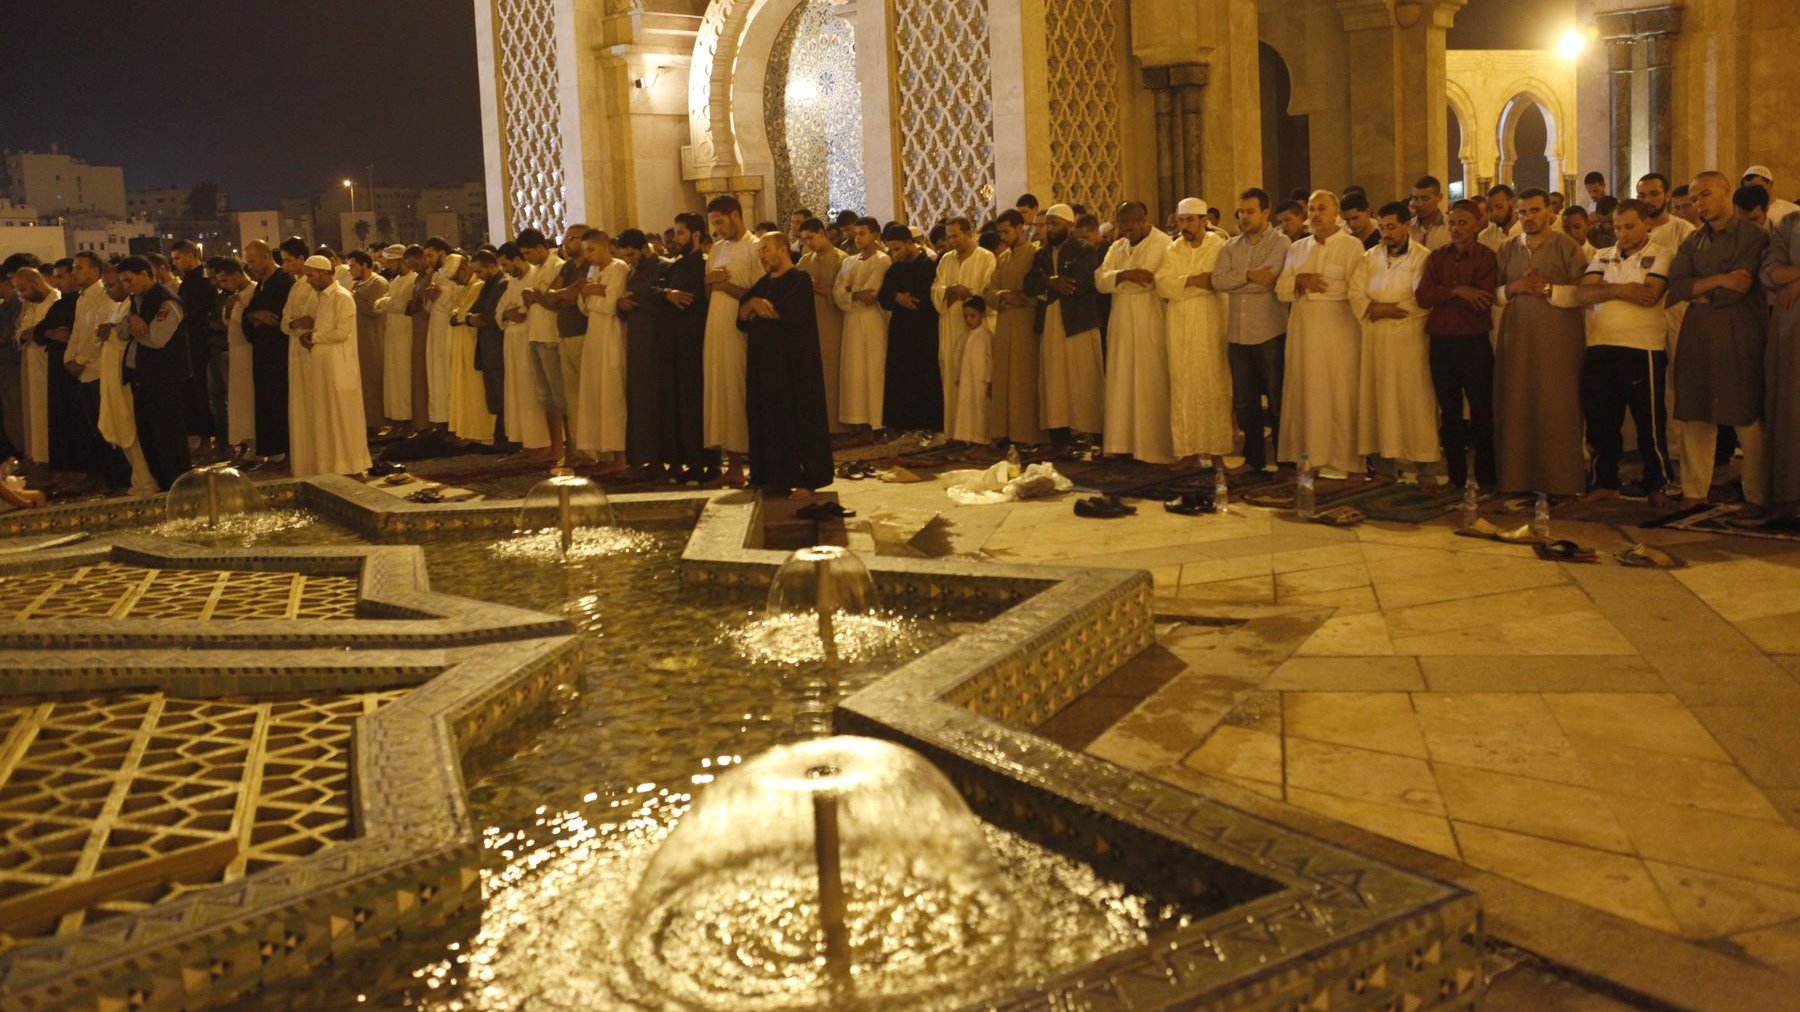 كل الأماكن في ساحة مسجد الحسن الثاني فاضت بالمصلين
